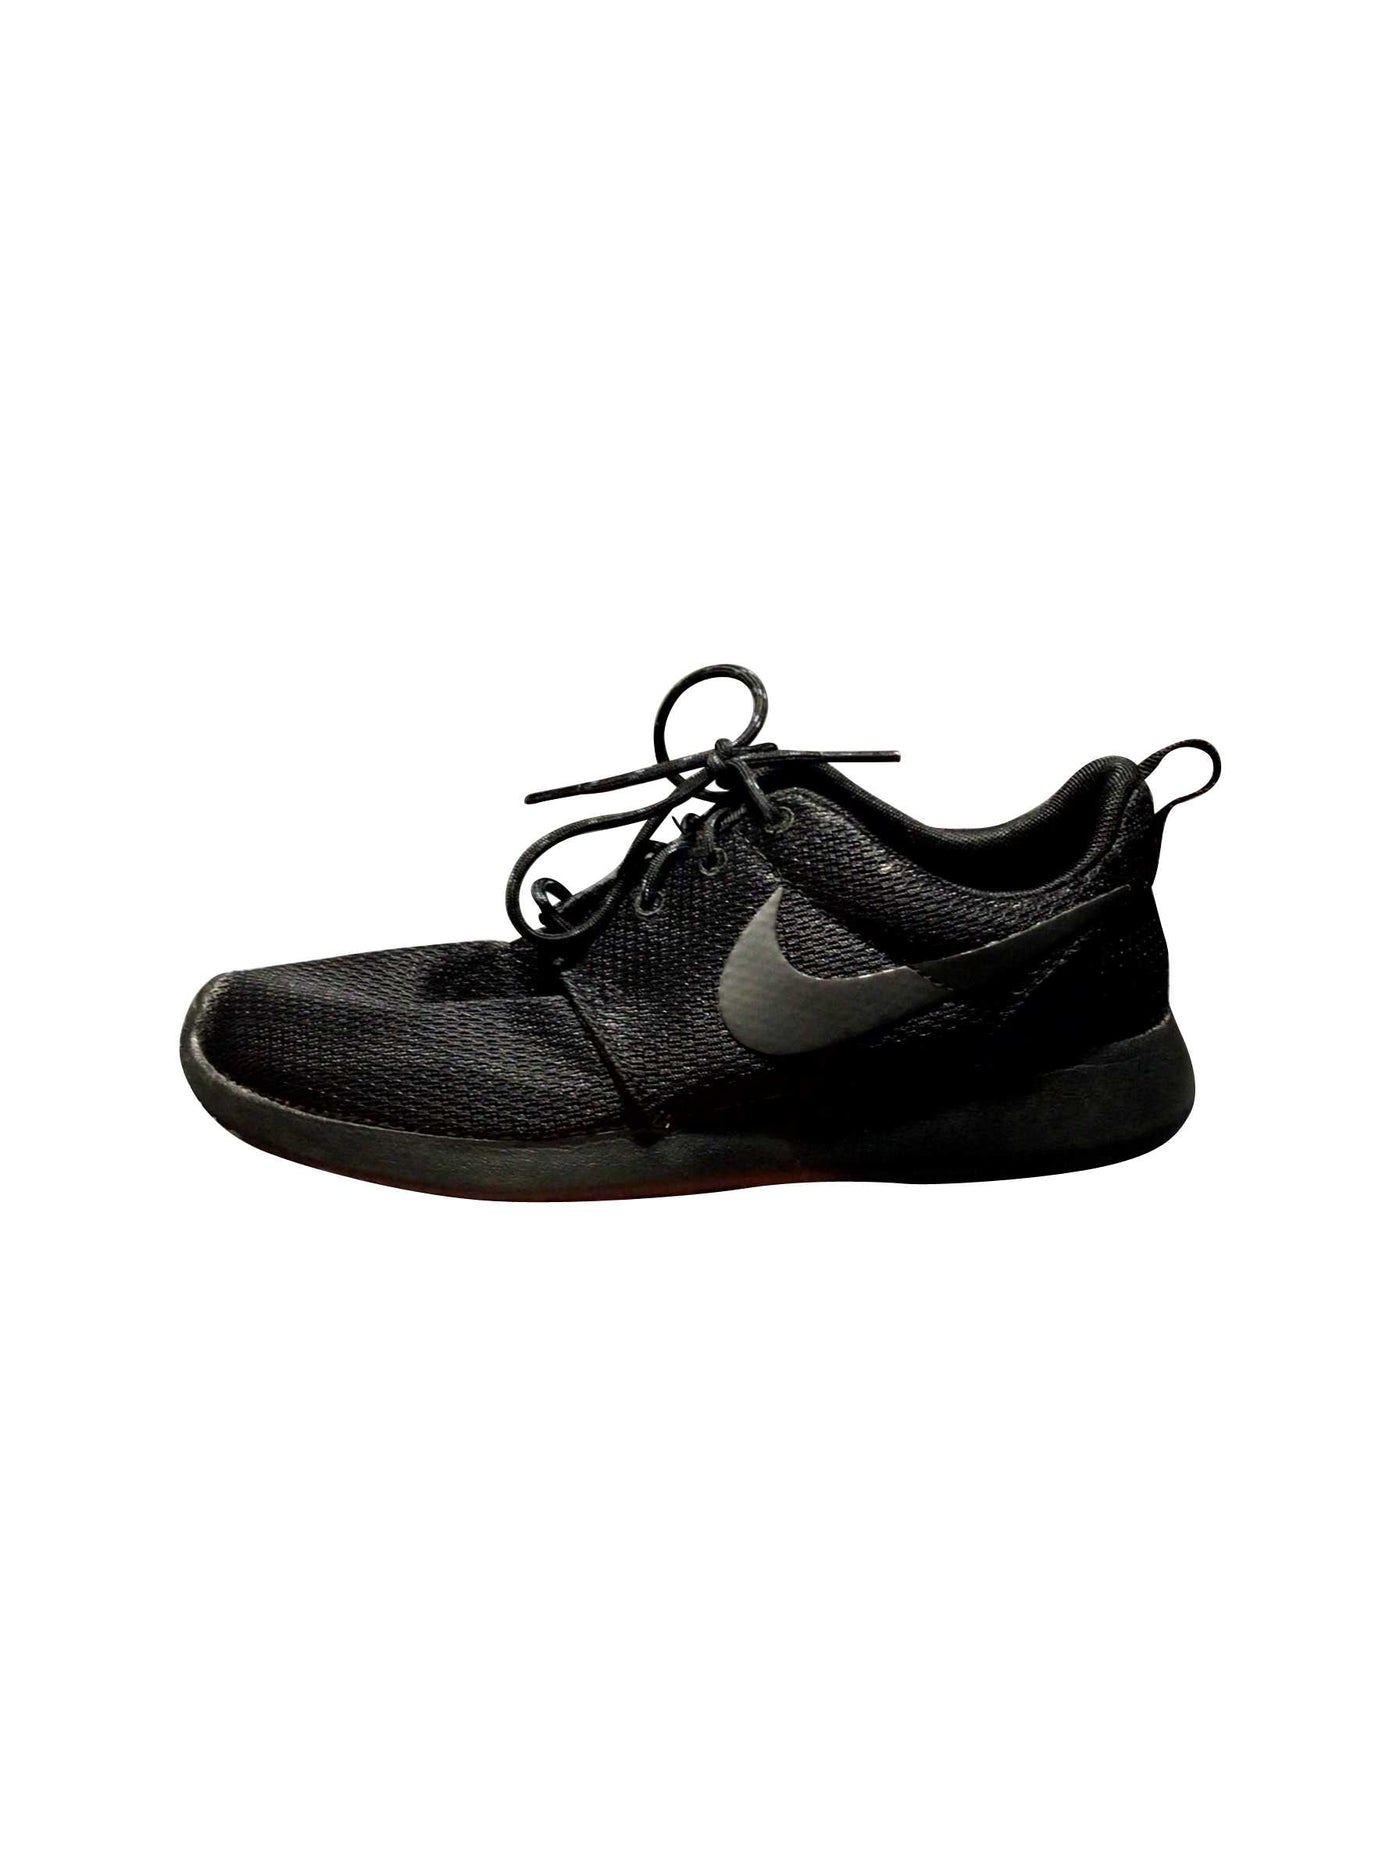 NIKE Regular fit Sneakers in Black - Size 7 | 50 $ KOOP